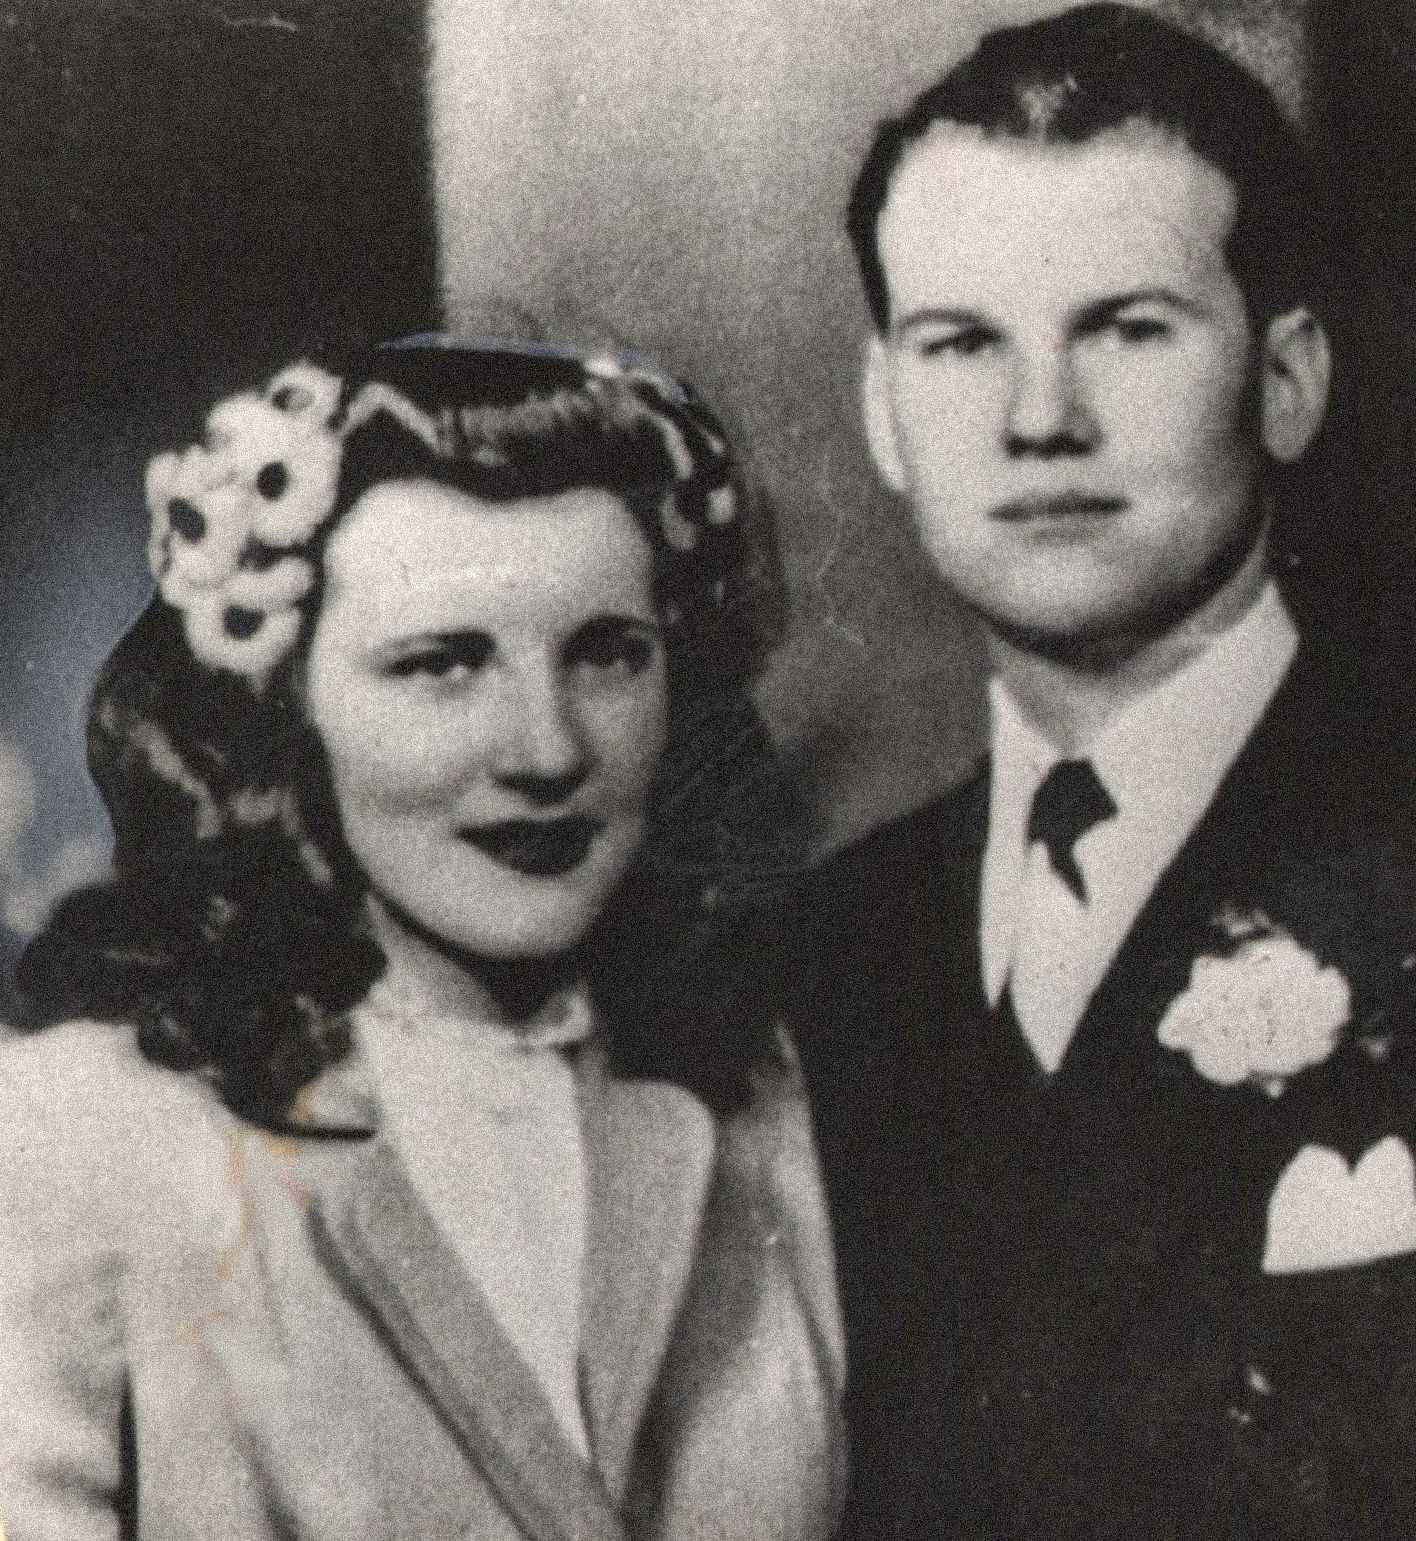 यहाँ चित्रित सैम और मर्लिन शेपर्ड, एक युवा और प्रतीत होता है खुश जोड़े हैं। दोनों ने 21 फरवरी, 1945 को शादी की और उनका एक बच्चा सैम रीज़ शेपर्ड था। हत्या के समय मर्लिन अपने दूसरे बच्चे के साथ गर्भवती थी।